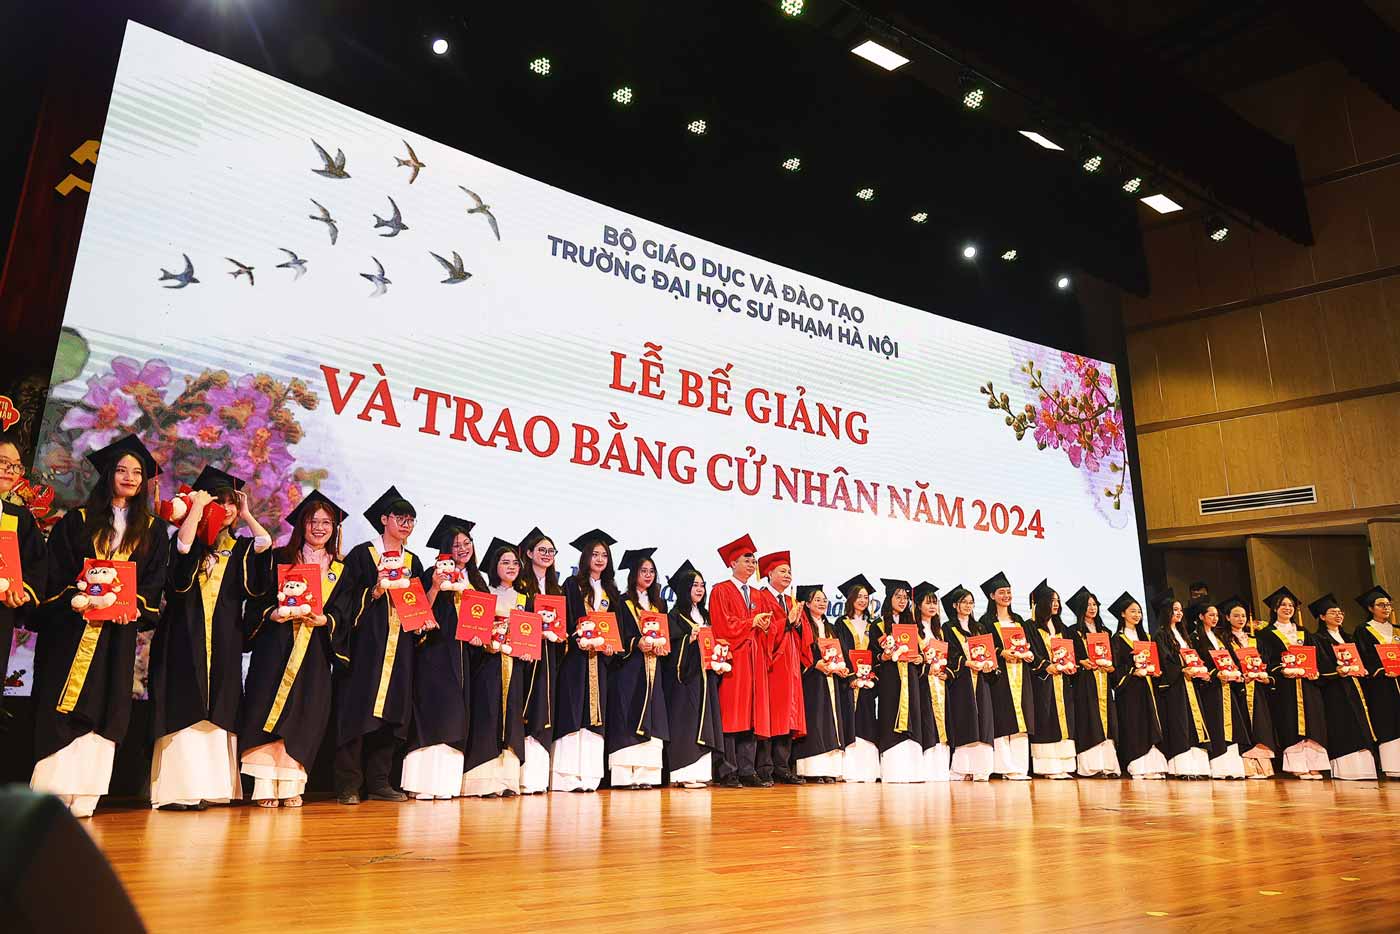 Hơn 2.500 sinh viên Trường Đại học sư phạm Hà Nội đã được nhận bằng tốt nghiệp trong ngày hôm nay 11.6.